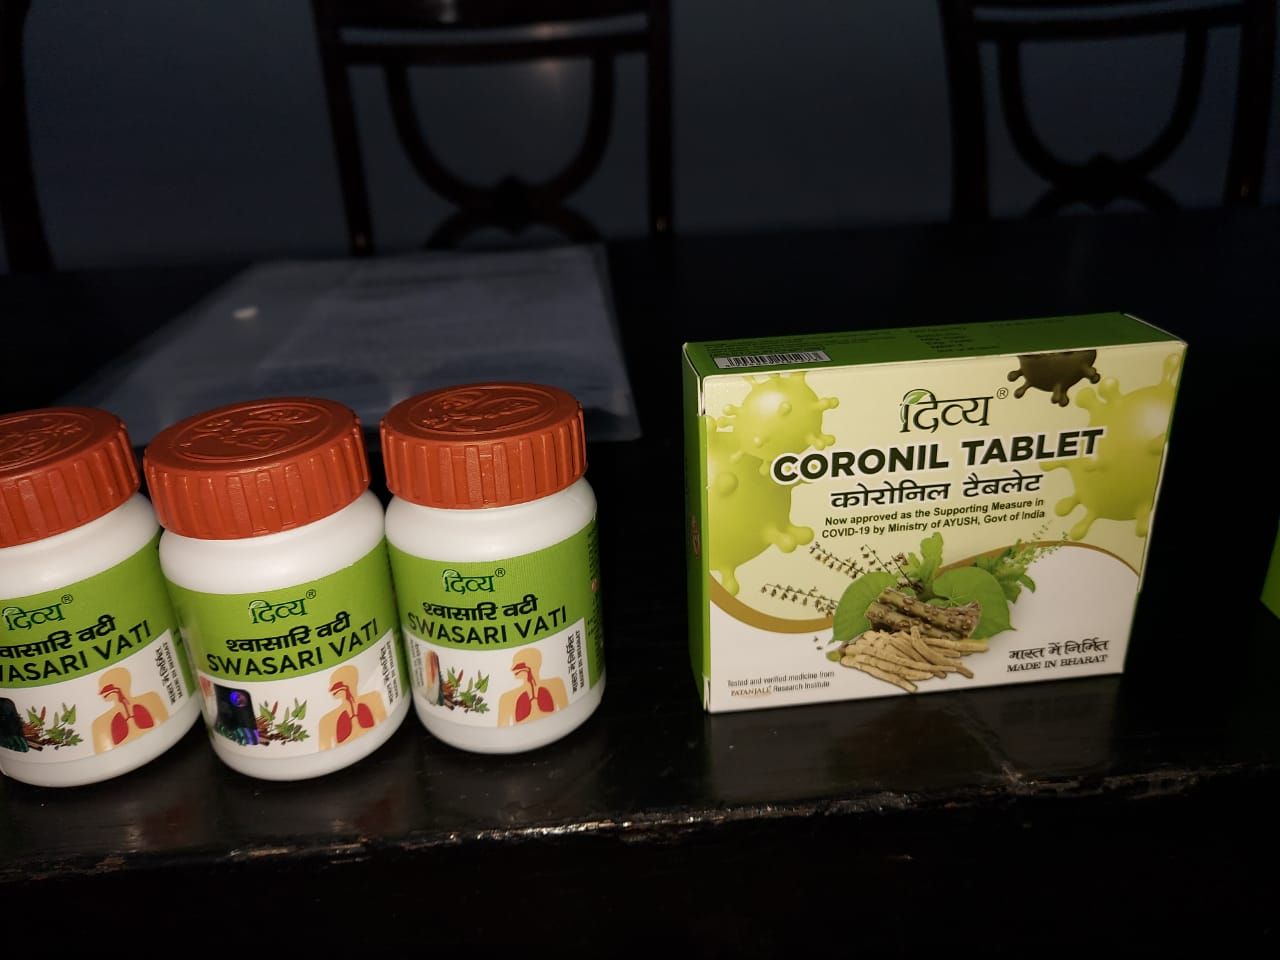 patanjali claims to make corona medicine, calls it supporting measure2 - Satya Hindi